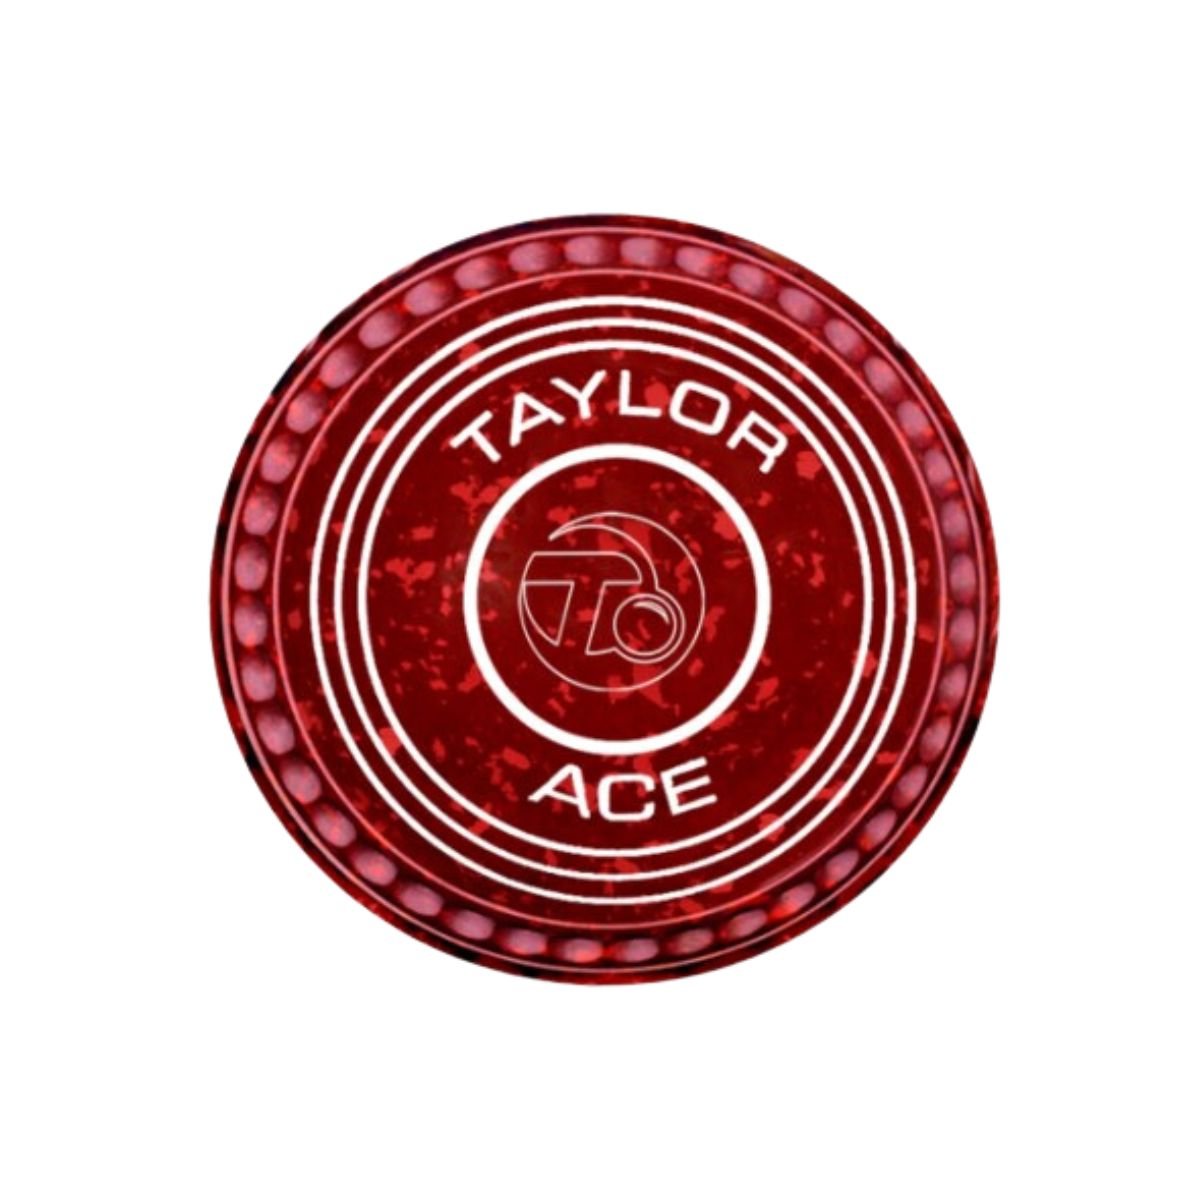 Taylor Ace Pro-Grip Coloured Bowls - 4